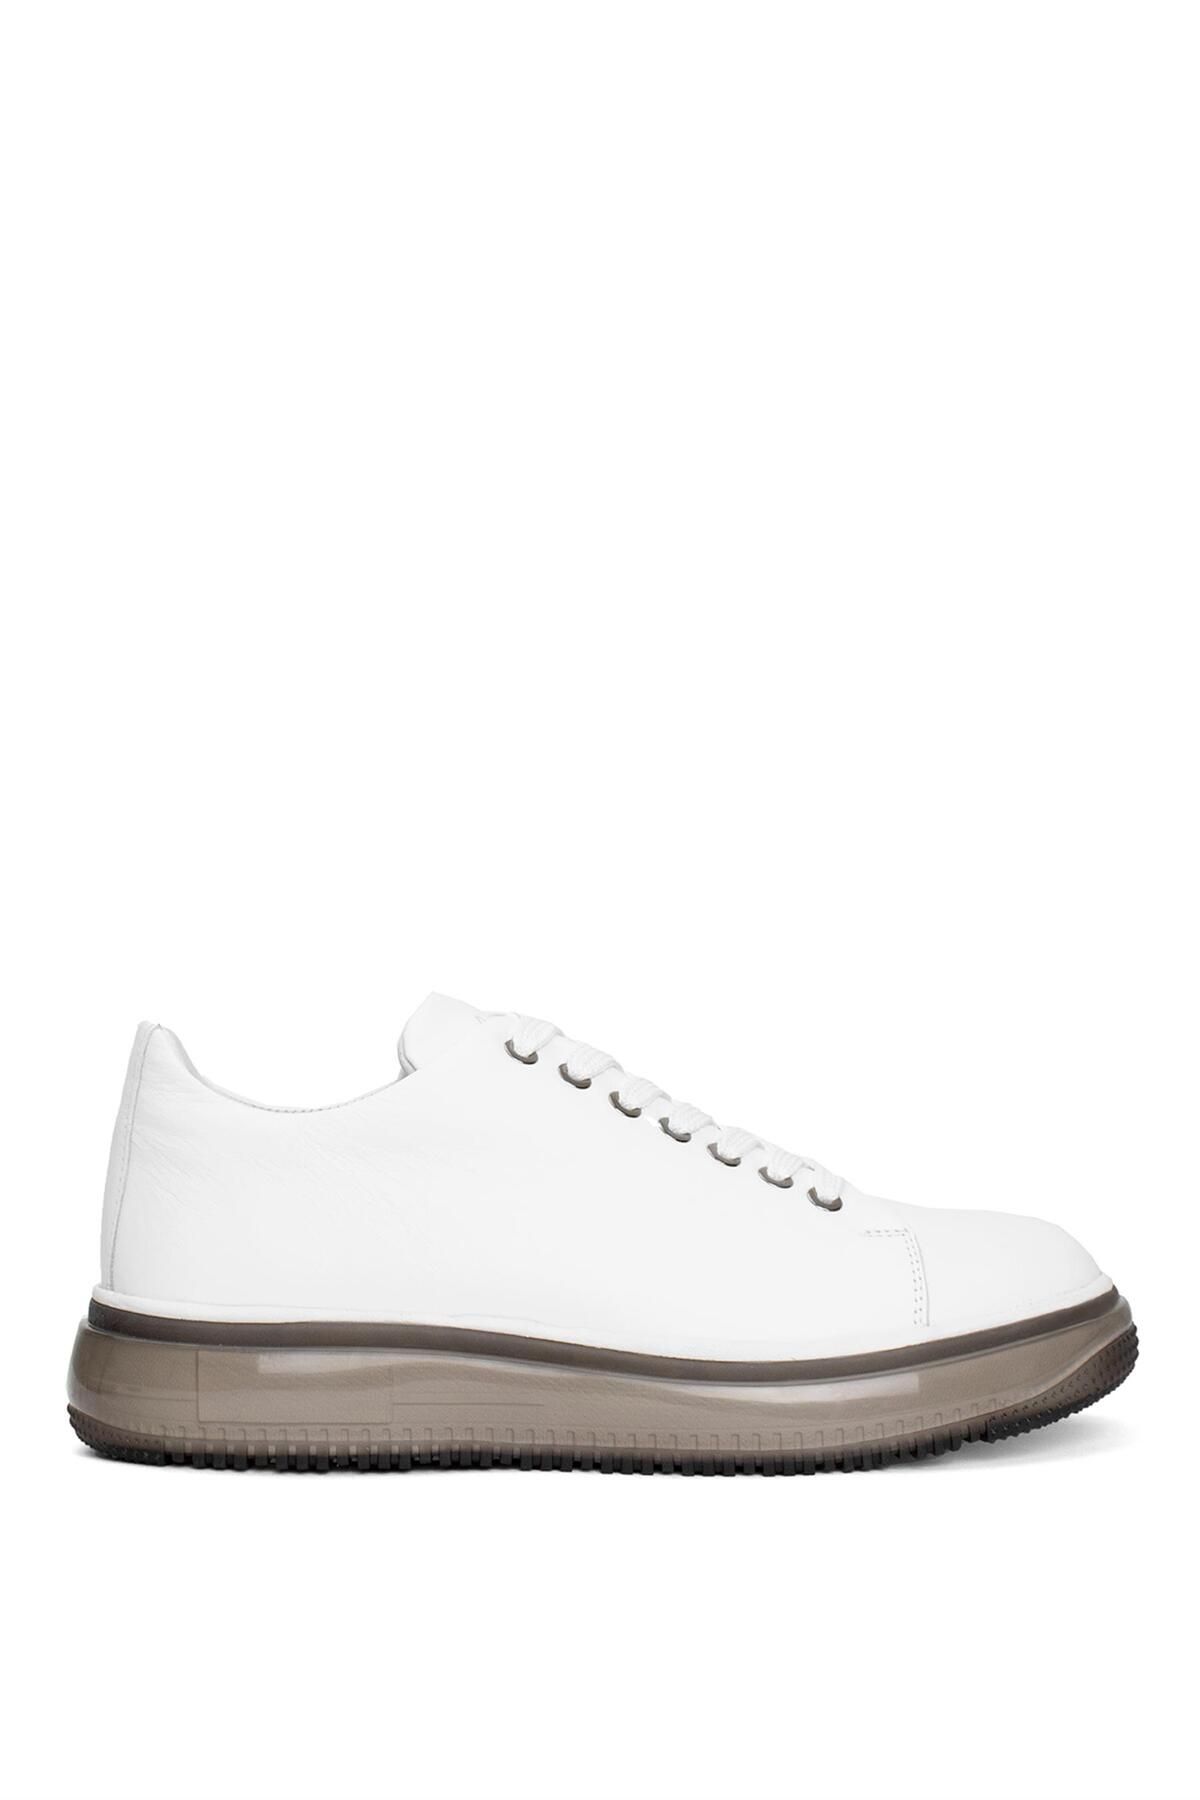 MARCOMEN 19373 Erkek Hakiki Deri Casual Ayakkabı Beyaz